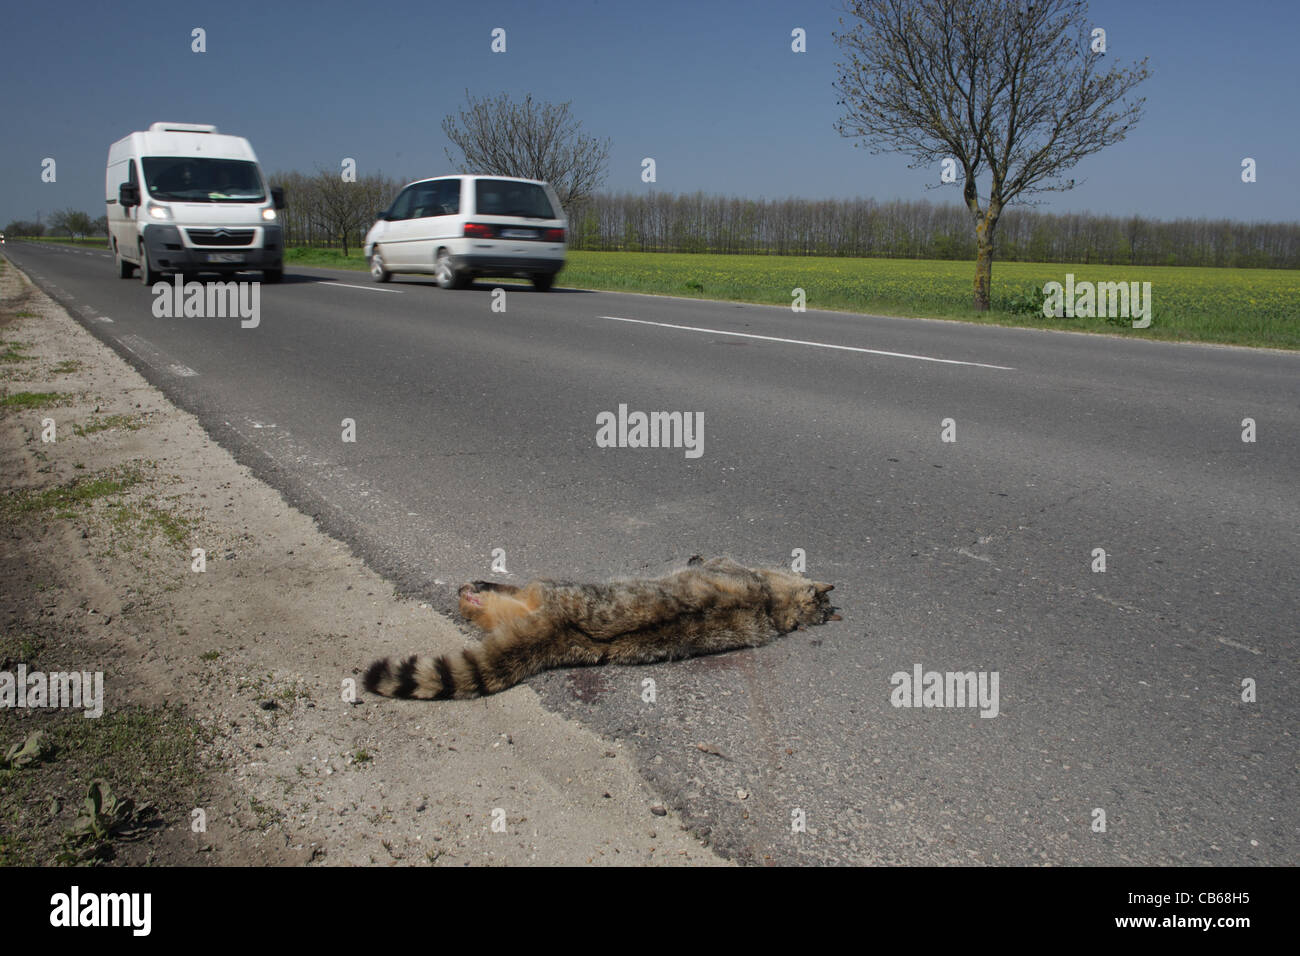 Wildcat morts (chat sauvage européen - Felis silvestris) tué par une voiture. Couché sur la route. Bulgarie Banque D'Images